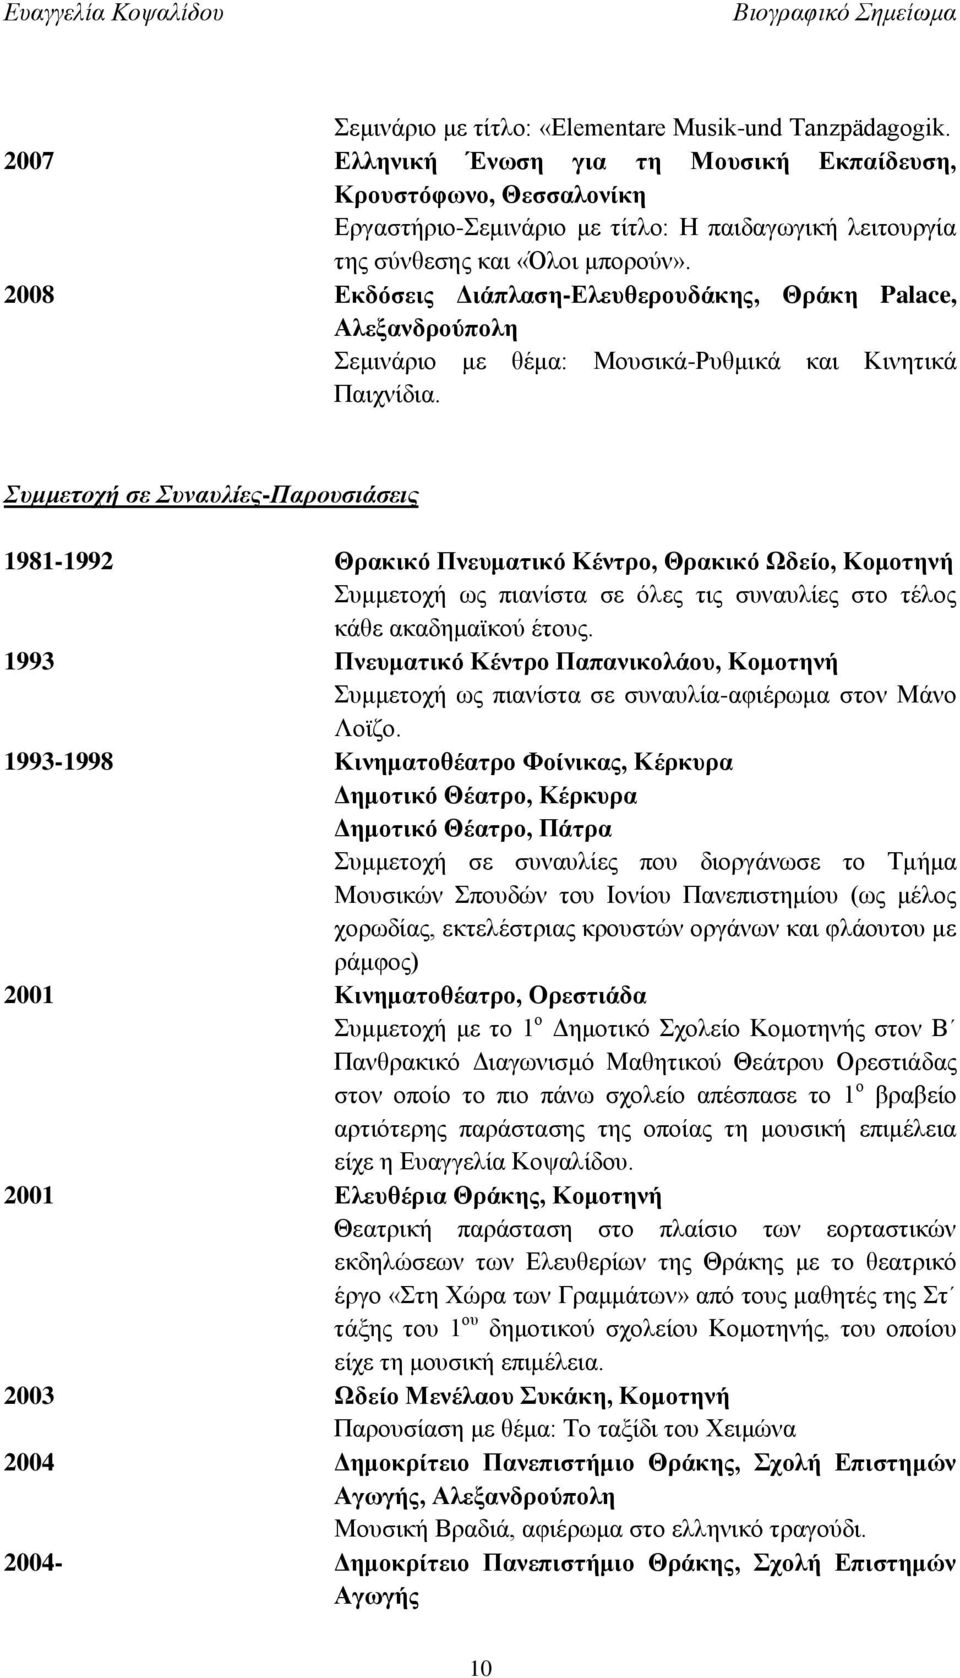 2008 Εκδόσεις Διάπλαση-Ελευθερουδάκης, Θράκη Palace, Αλεξανδρούπολη Σεμινάριο με θέμα: Μουσικά-Ρυθμικά και Κινητικά Παιχνίδια.